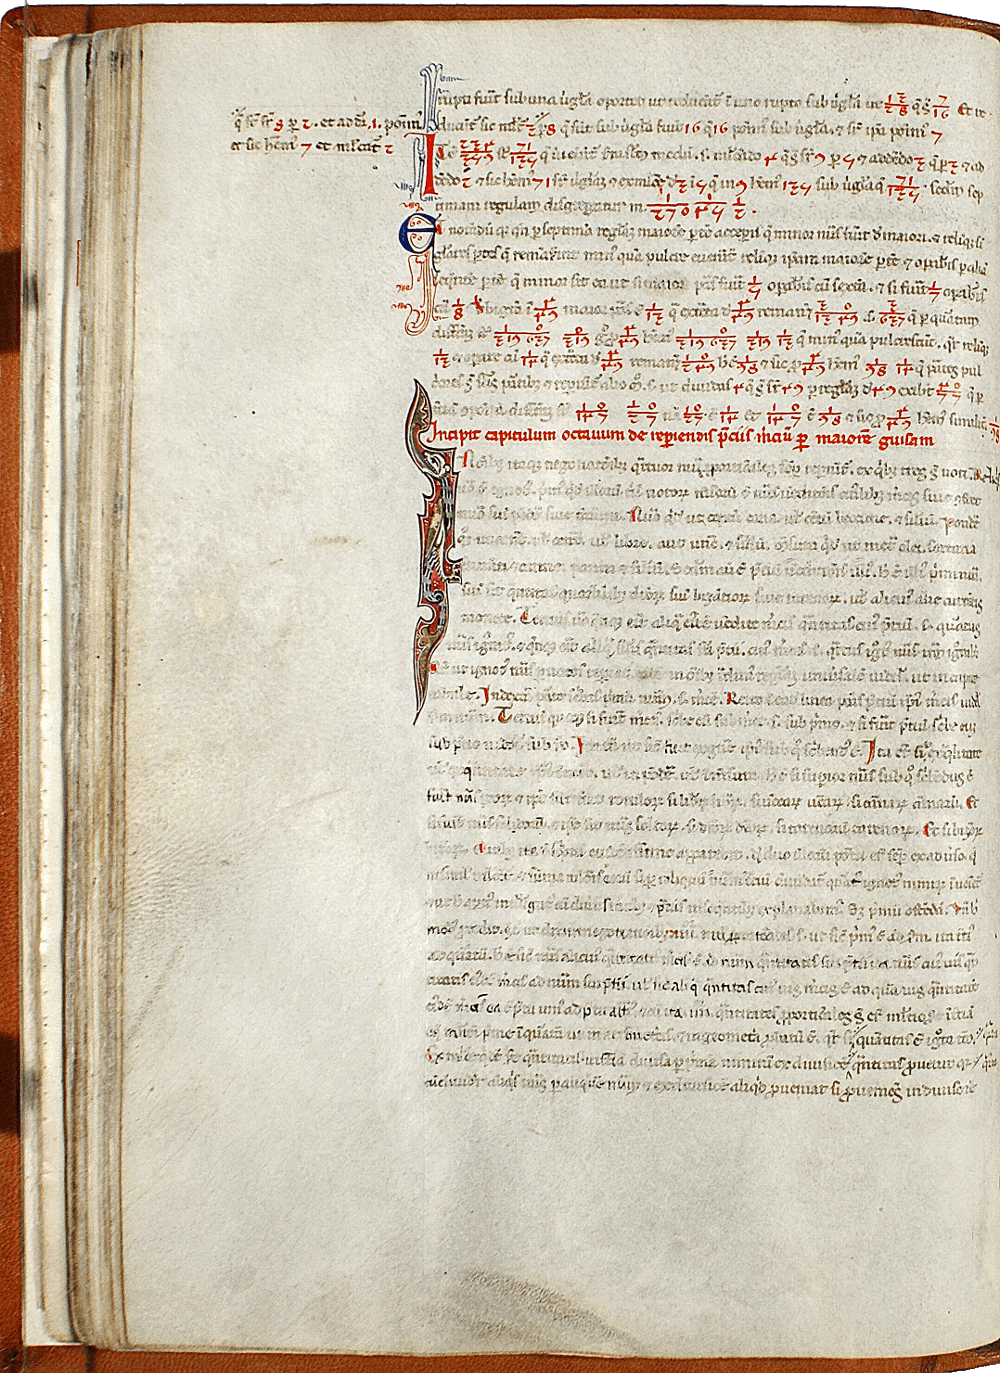 pagina iniziale capitolo ottavo parte prima del Liber abaci<br>Conv. Sopp. C.I. 2616, BNCF,  folio 34 verso